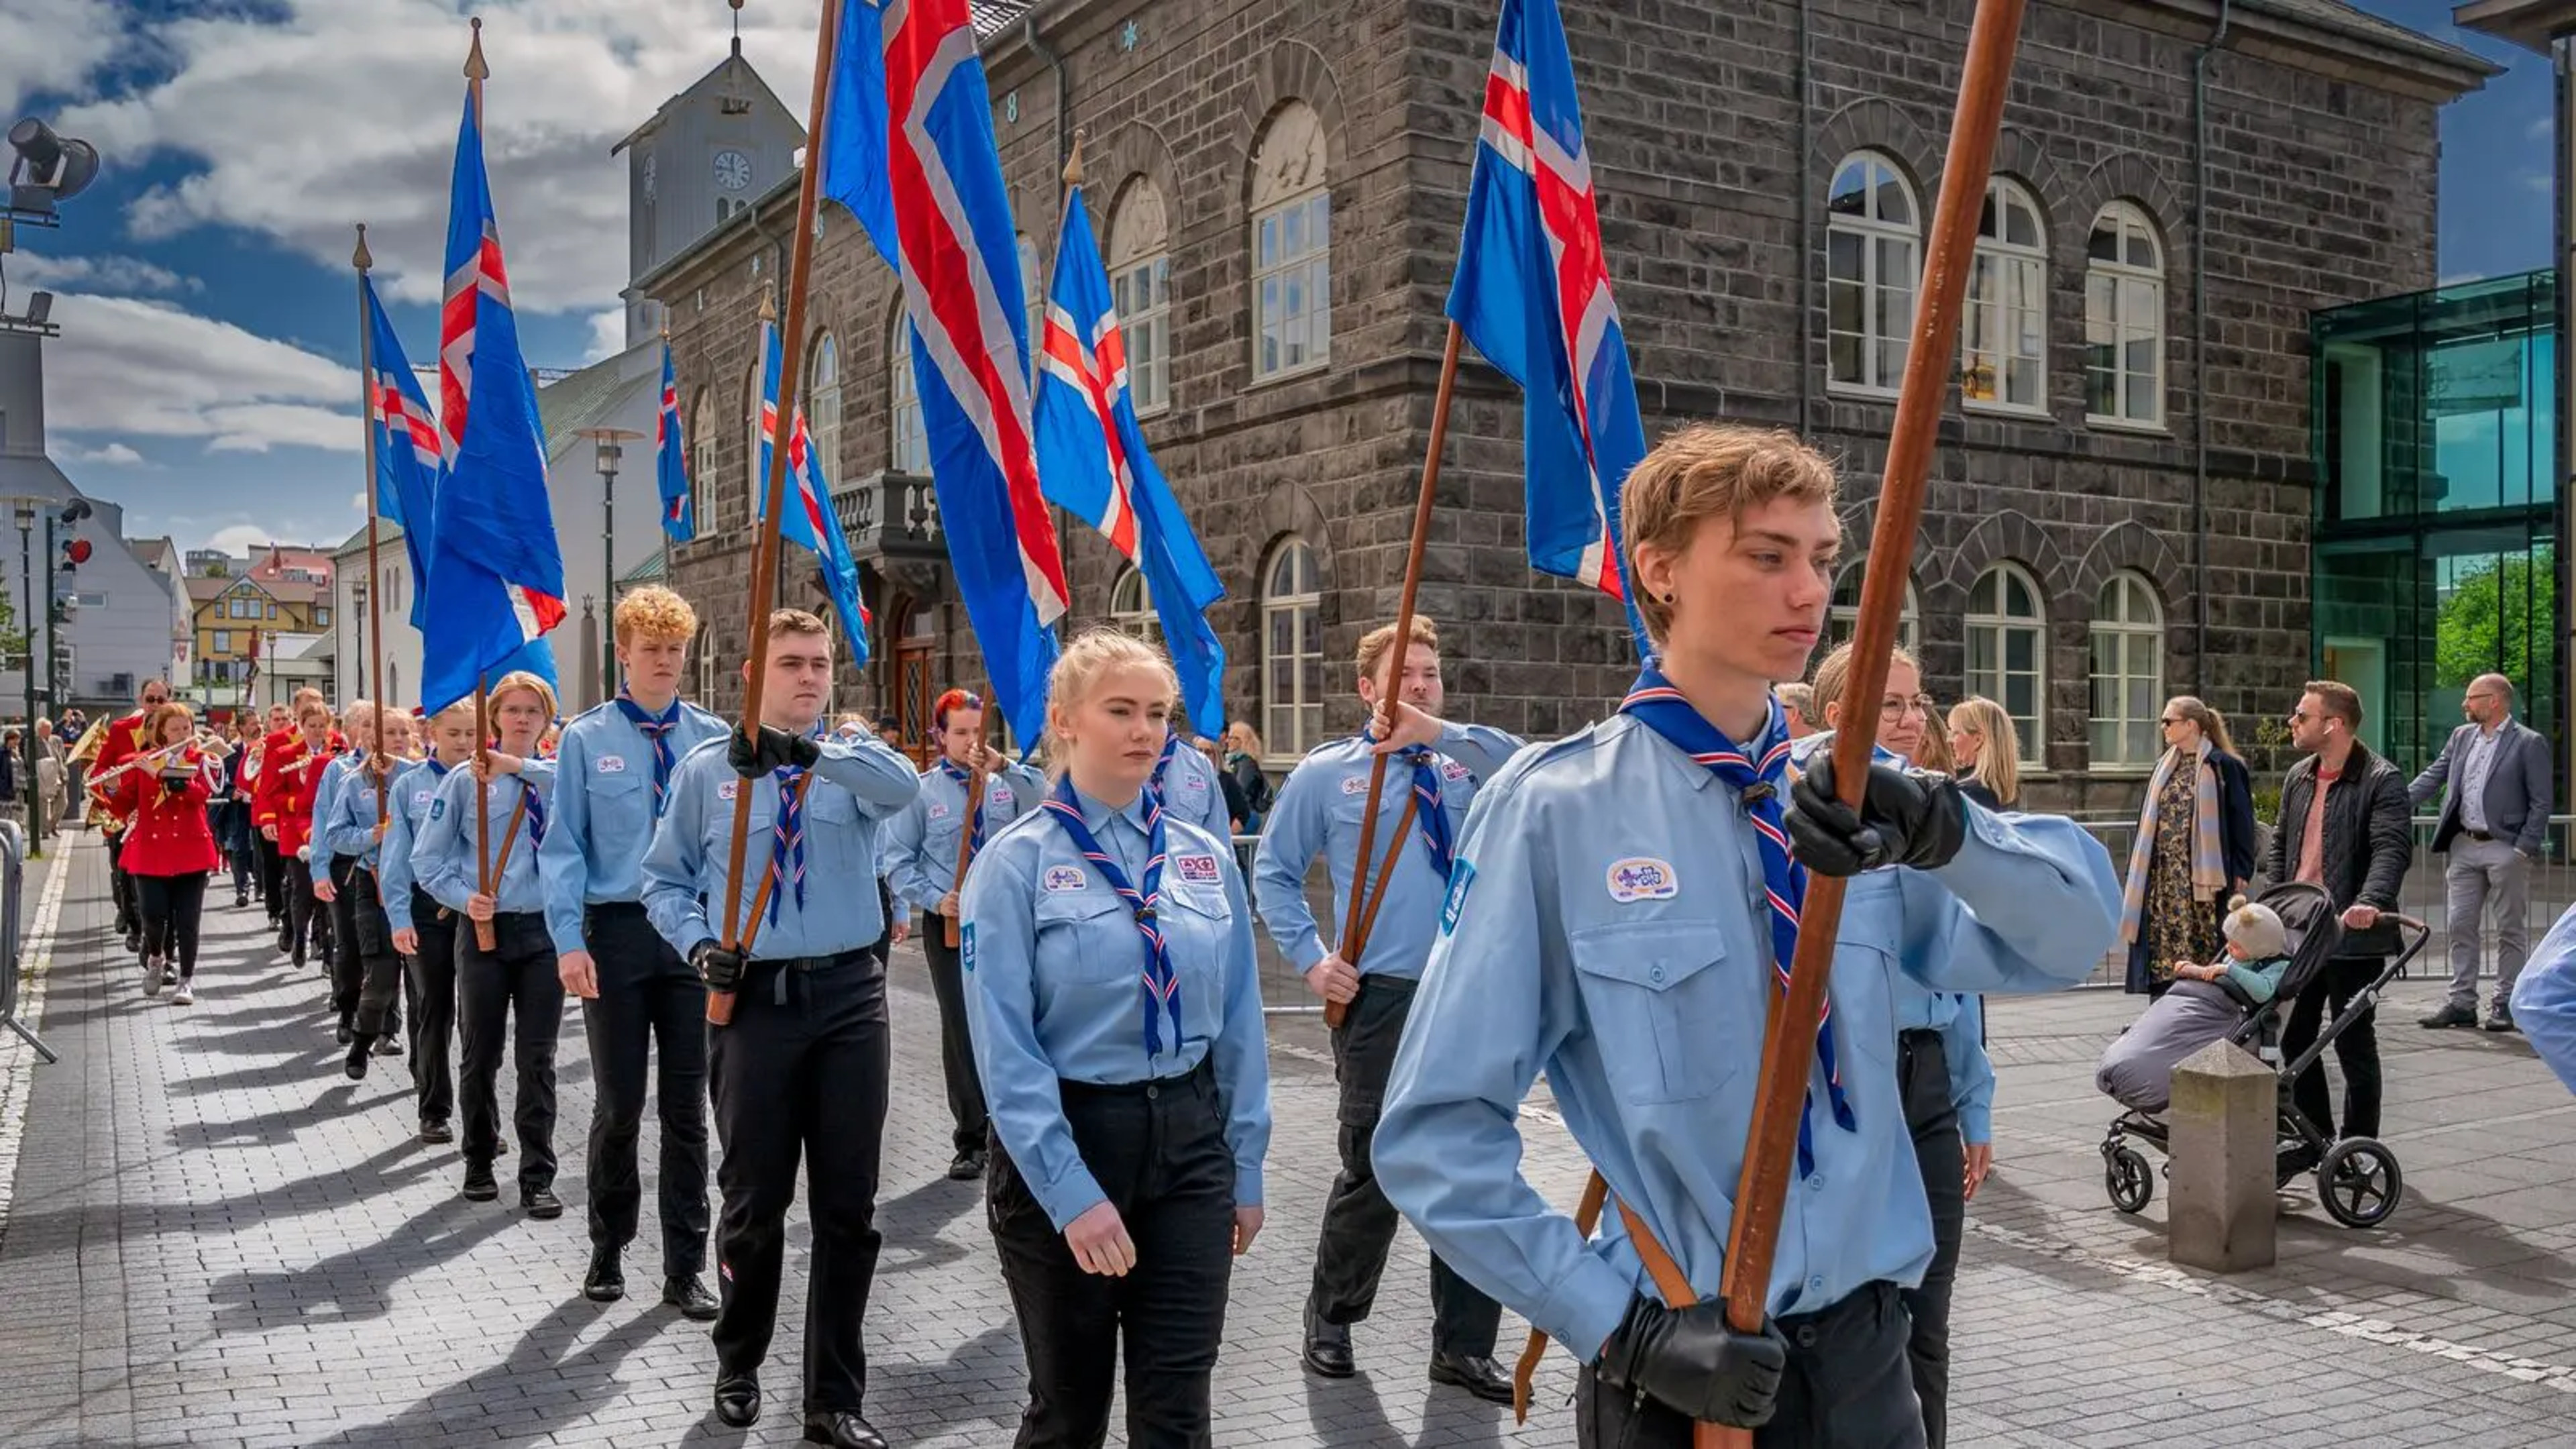 independence-day-17-june-scouts-copyright-visit-reykjavik-ragnar-th-sigurdsson.jpg.webp